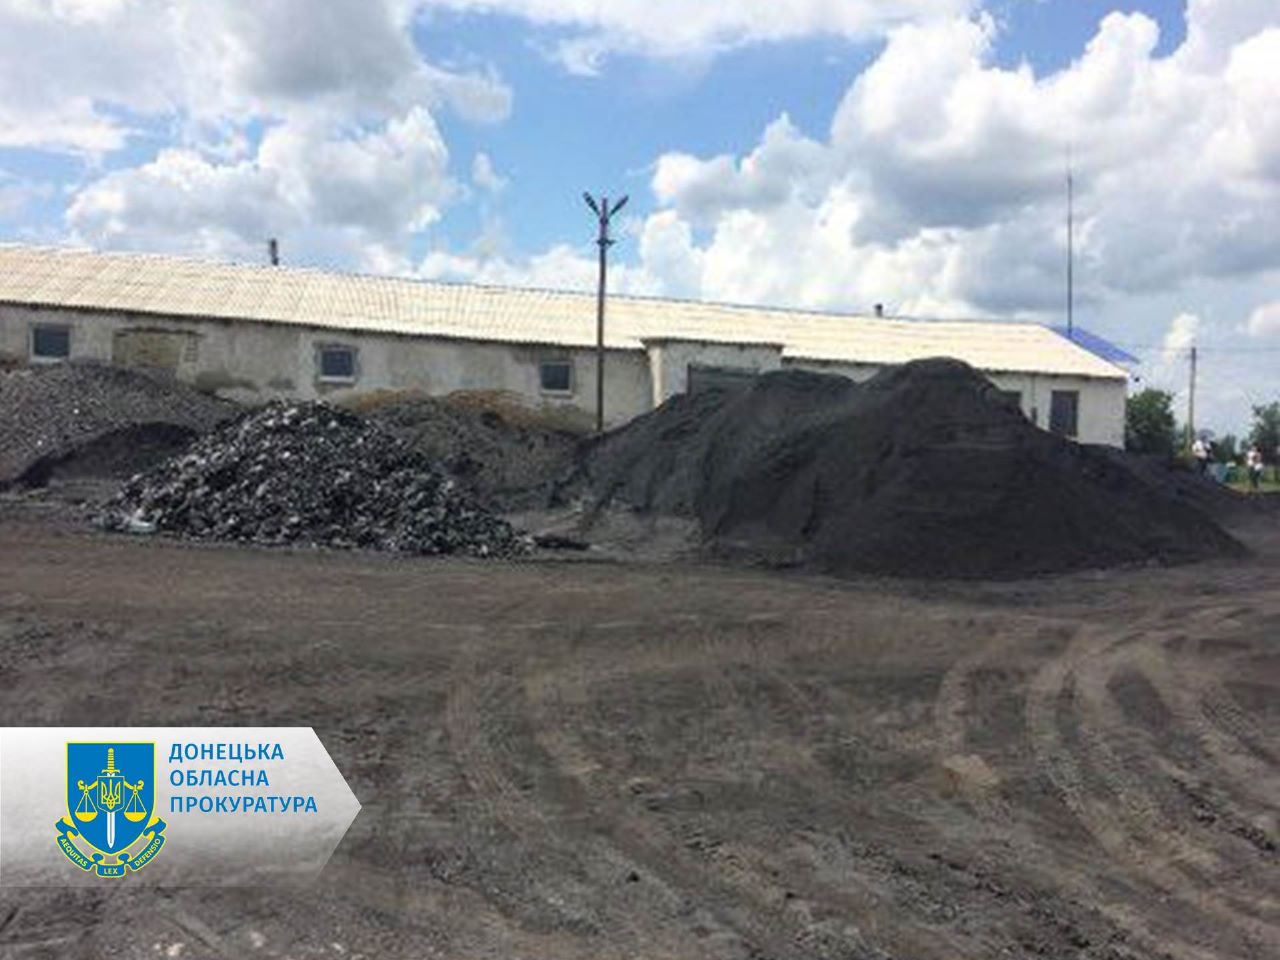 Налагодили схему з незаконного видобутку вугілля на майже 60 млн грн – на Донеччині судитимуть учасників організованої групи